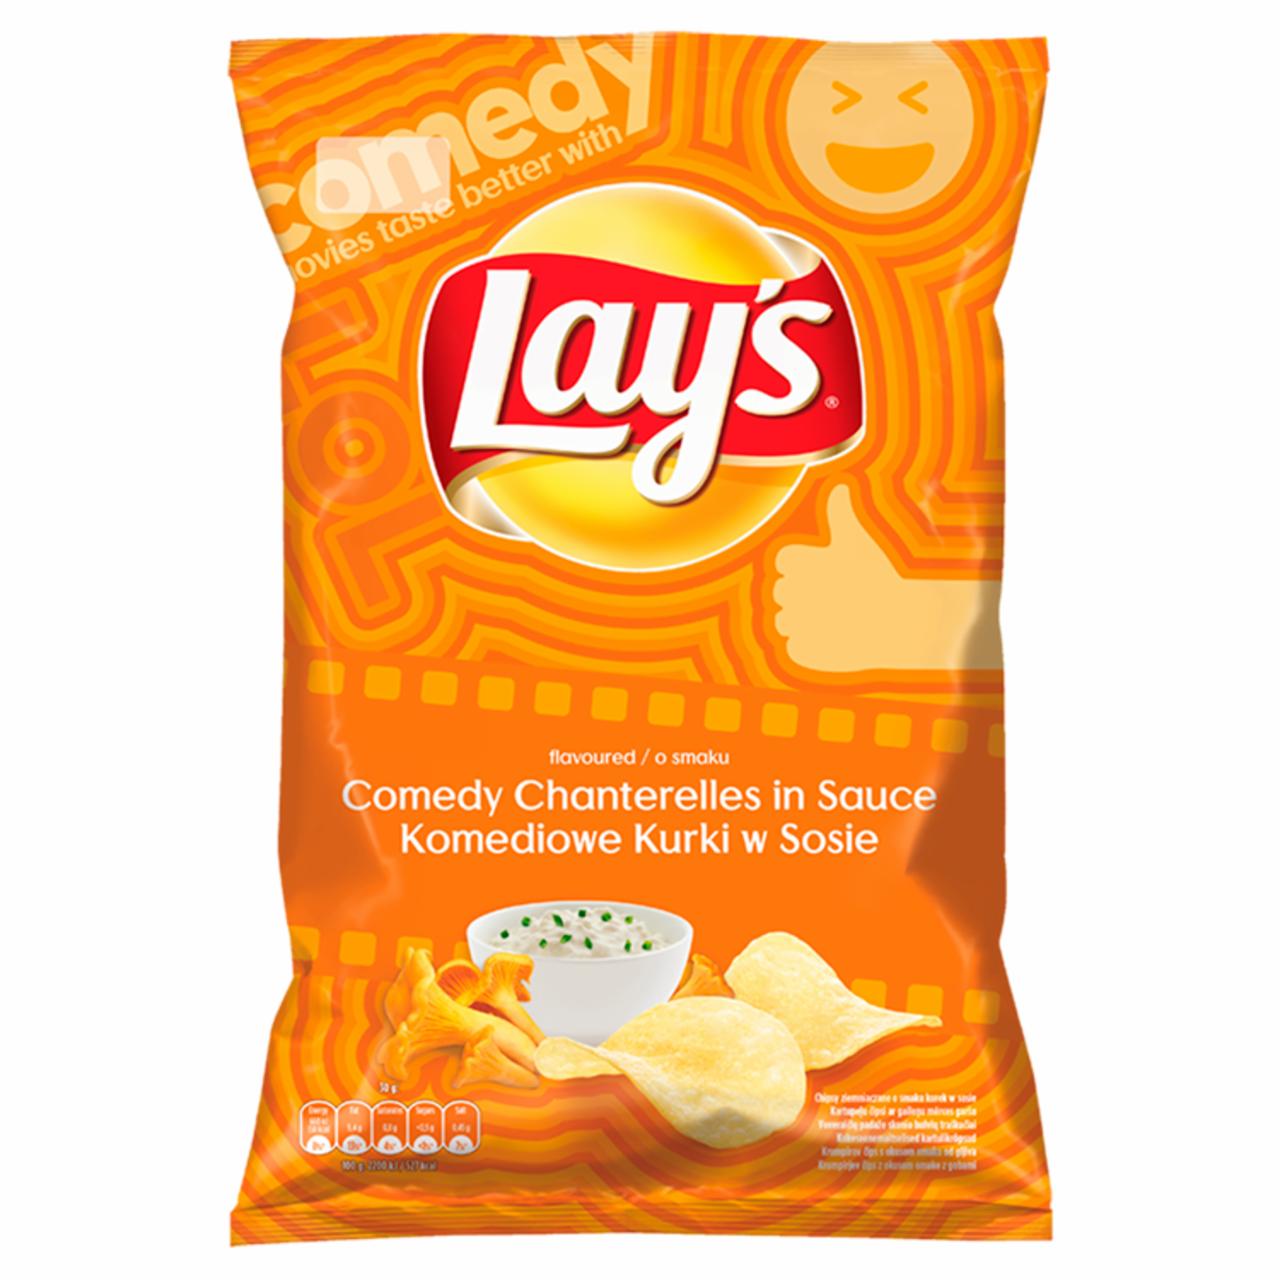 Zdjęcia - Lay's Chipsy ziemniaczane o smaku komediowe kurki w sosie 140 g